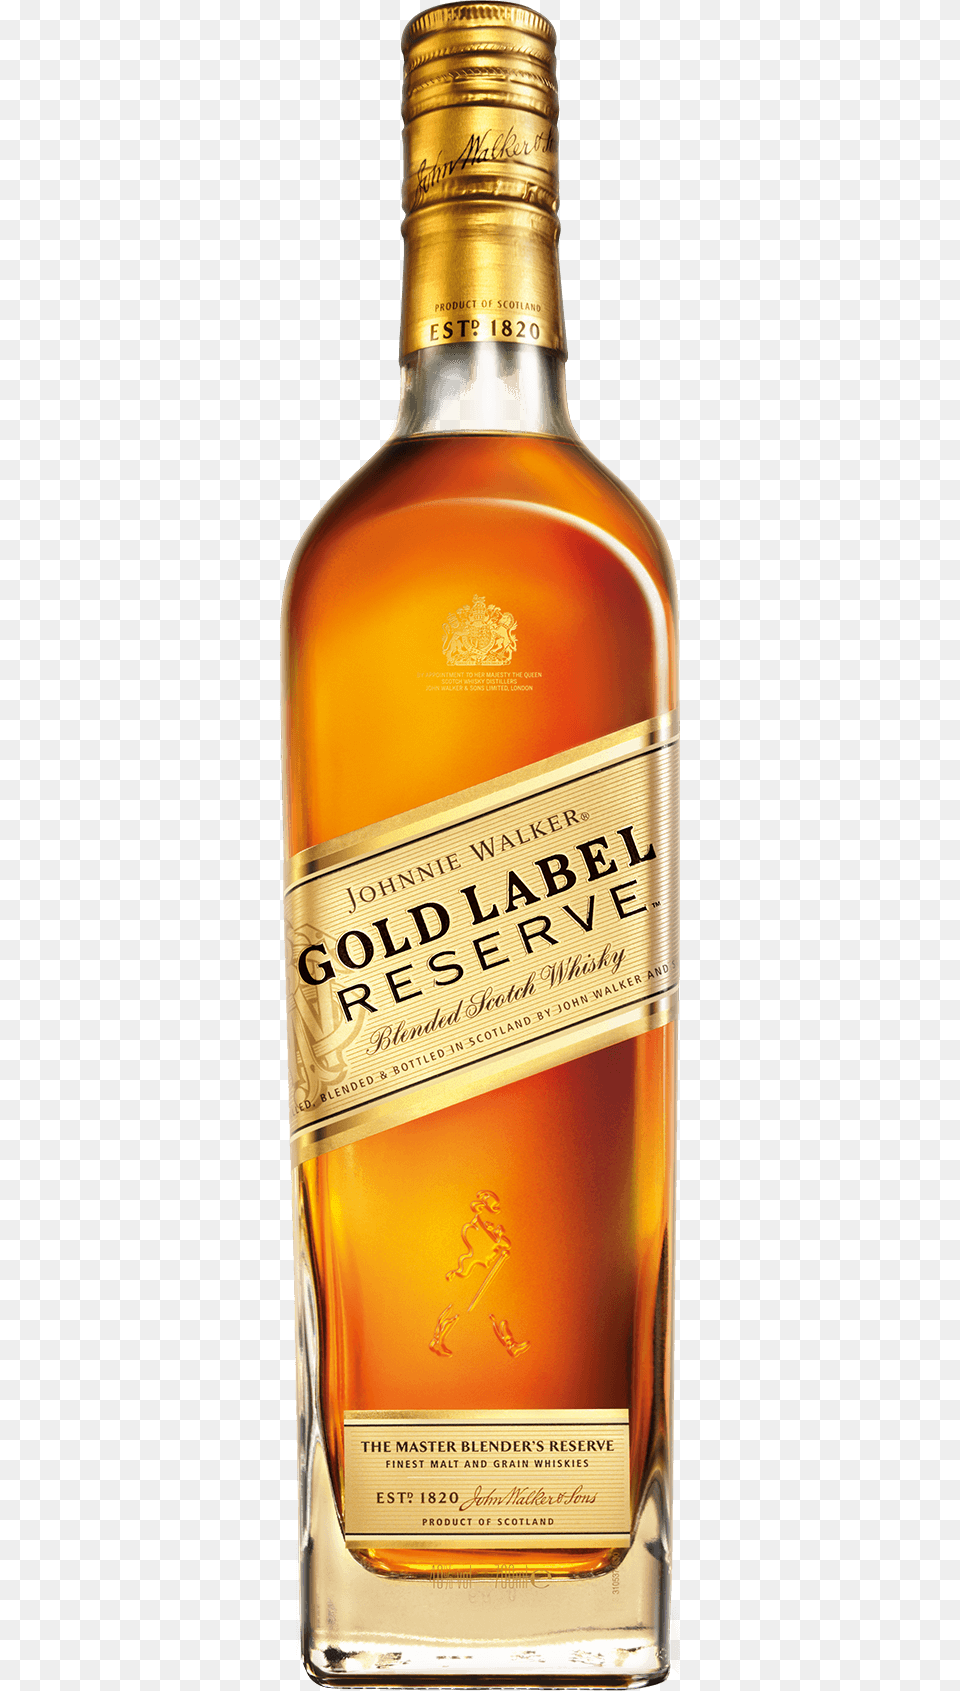 Johnnie Walker Gold Reserve Johnnie Walker Gold Label Reserve Blended Scotch Whisky, Alcohol, Beverage, Liquor, Beer Free Png